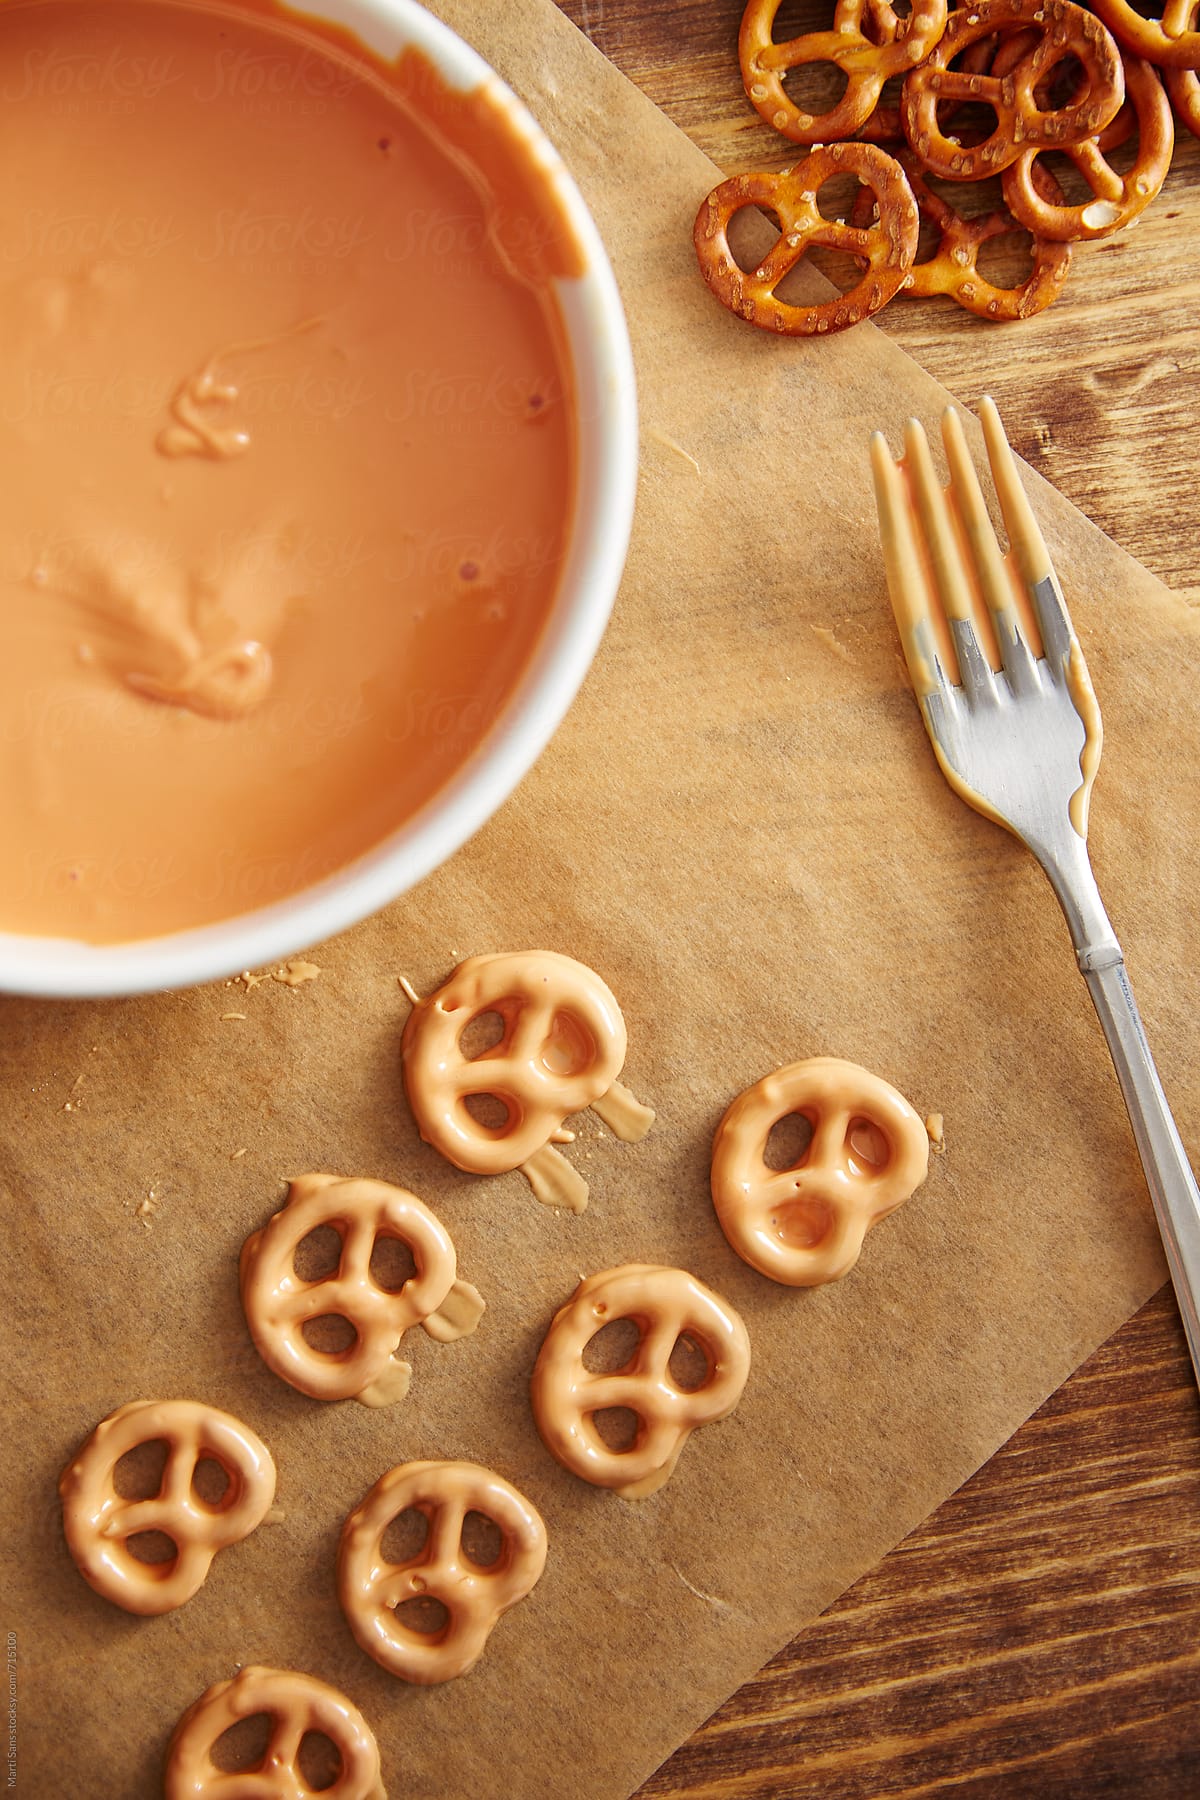 Pumpkin shaped pretzels and glazing